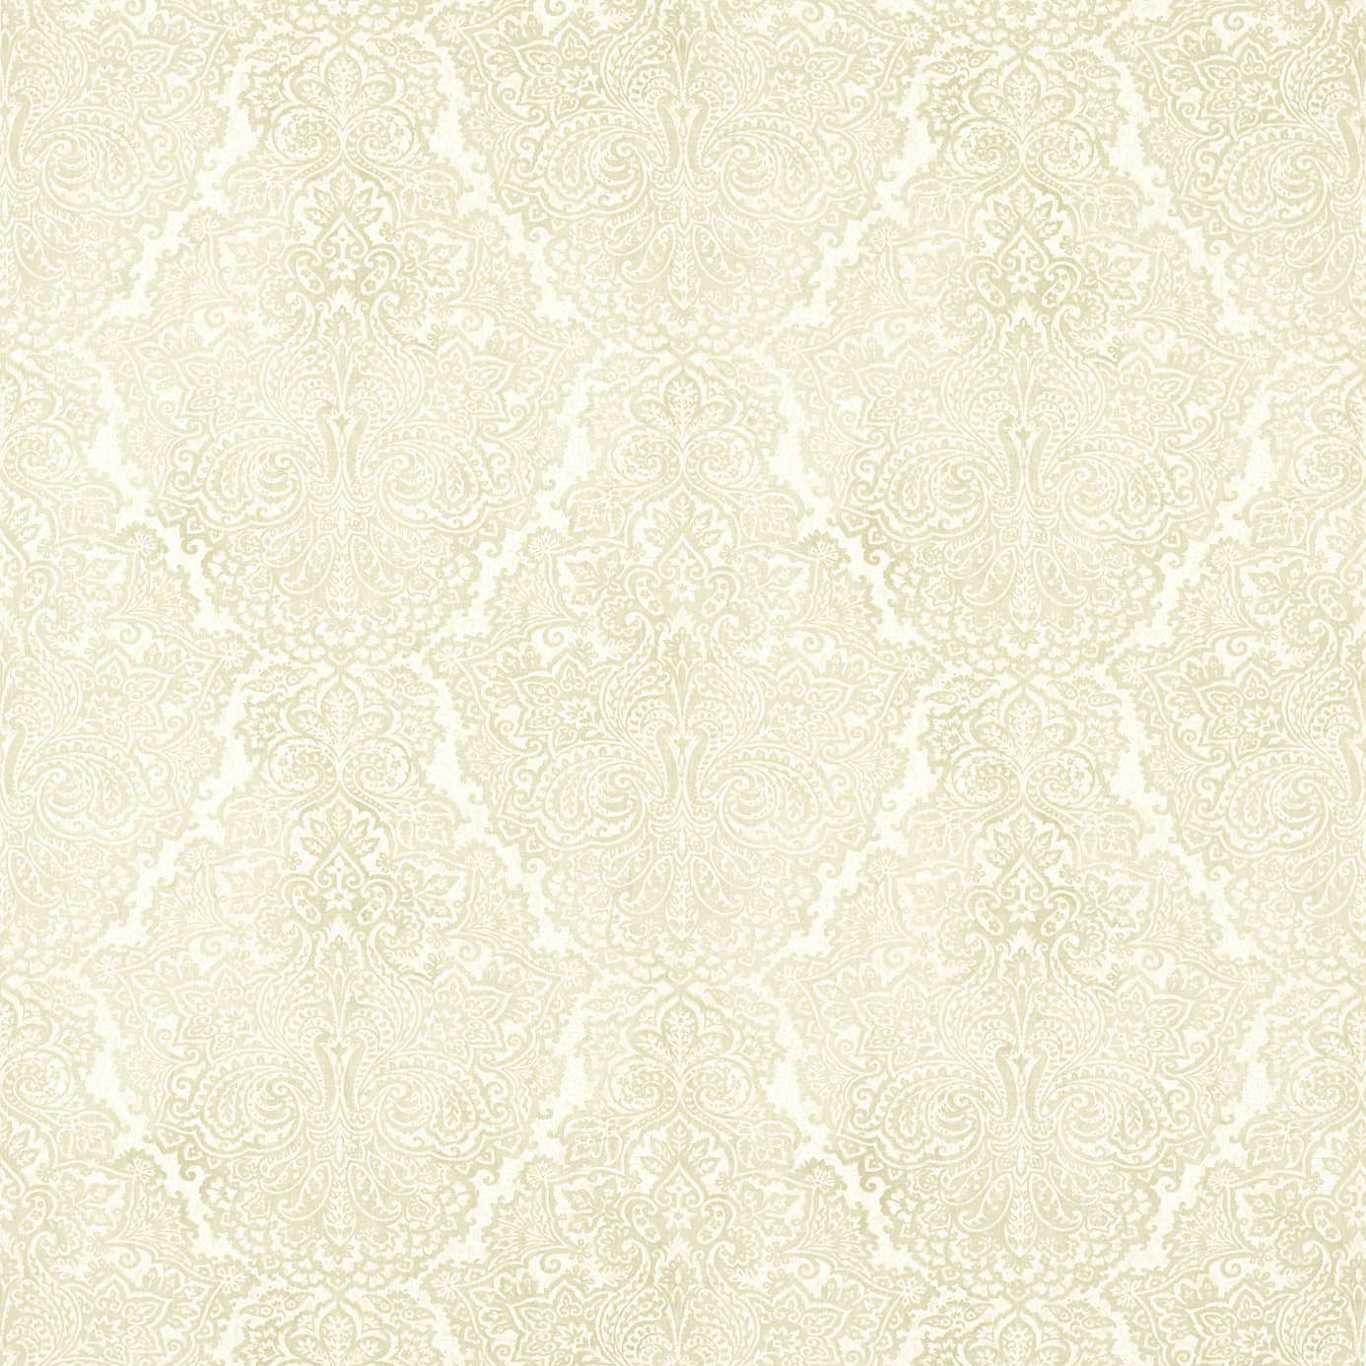 Aureilia Fabric by Harlequin - HTEF120974 - Sandstone/Chalk